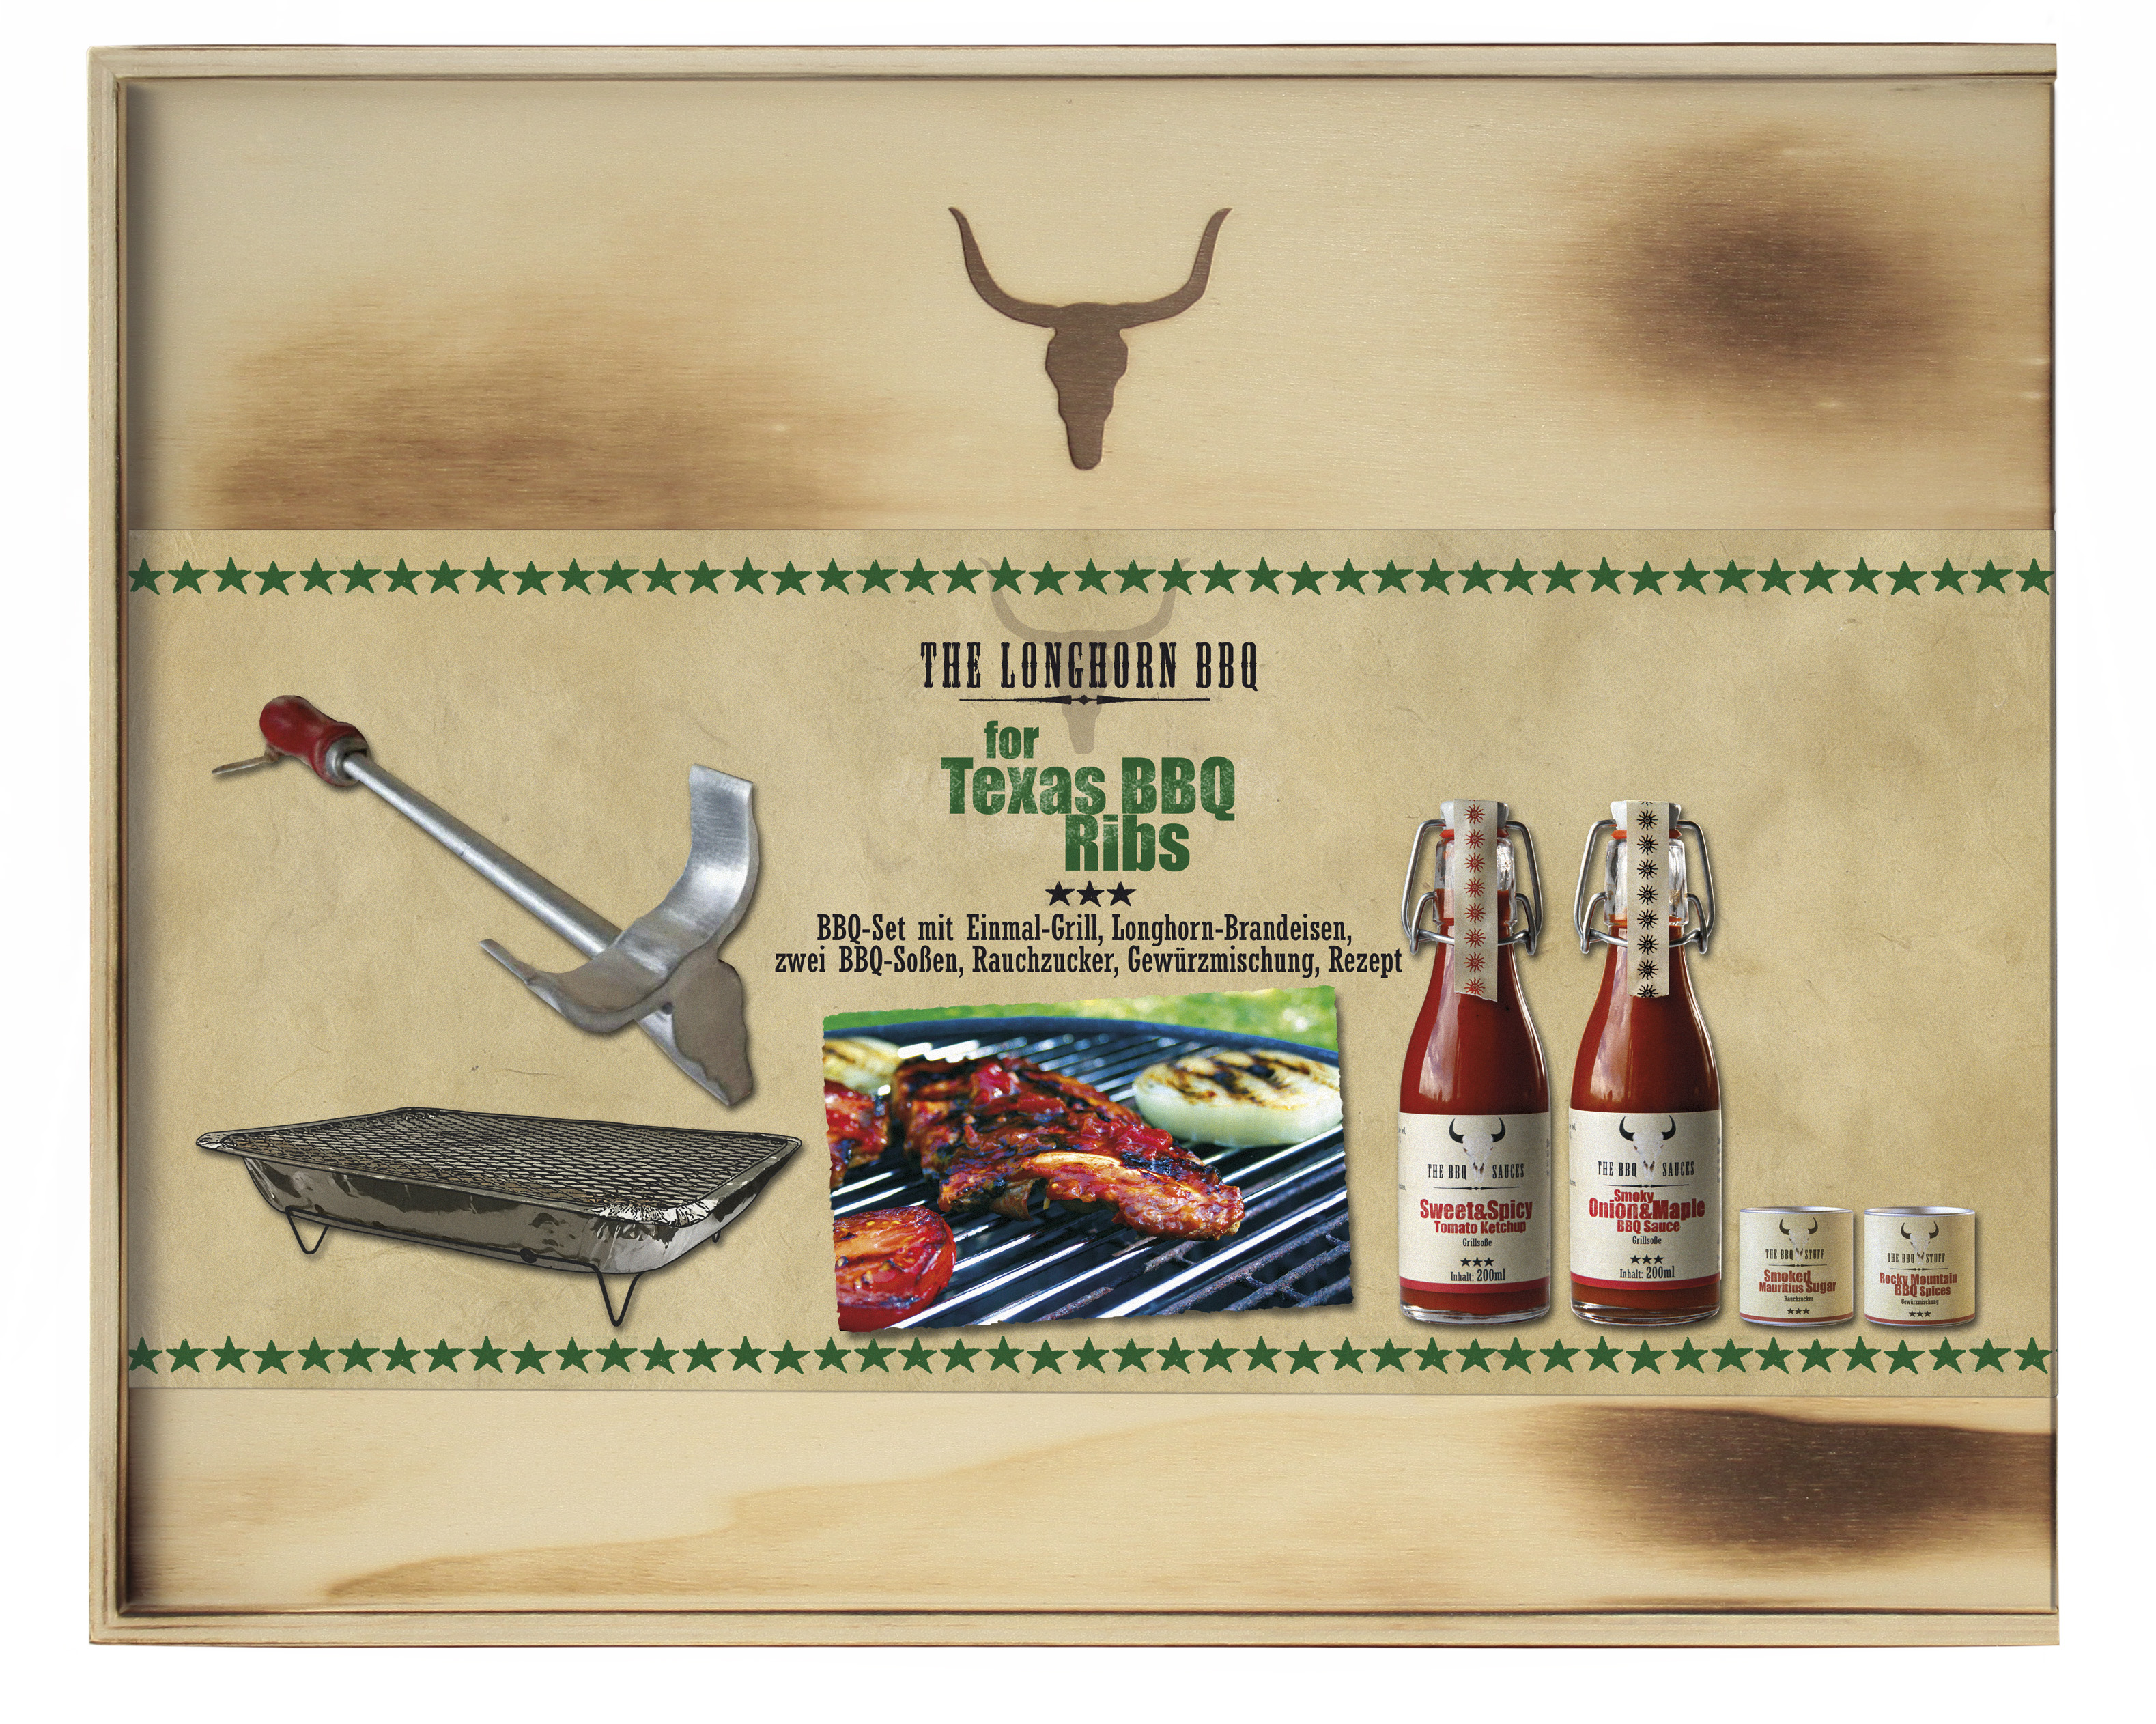 The Longhorn BBQ Kit - Texas BBQ Ribs